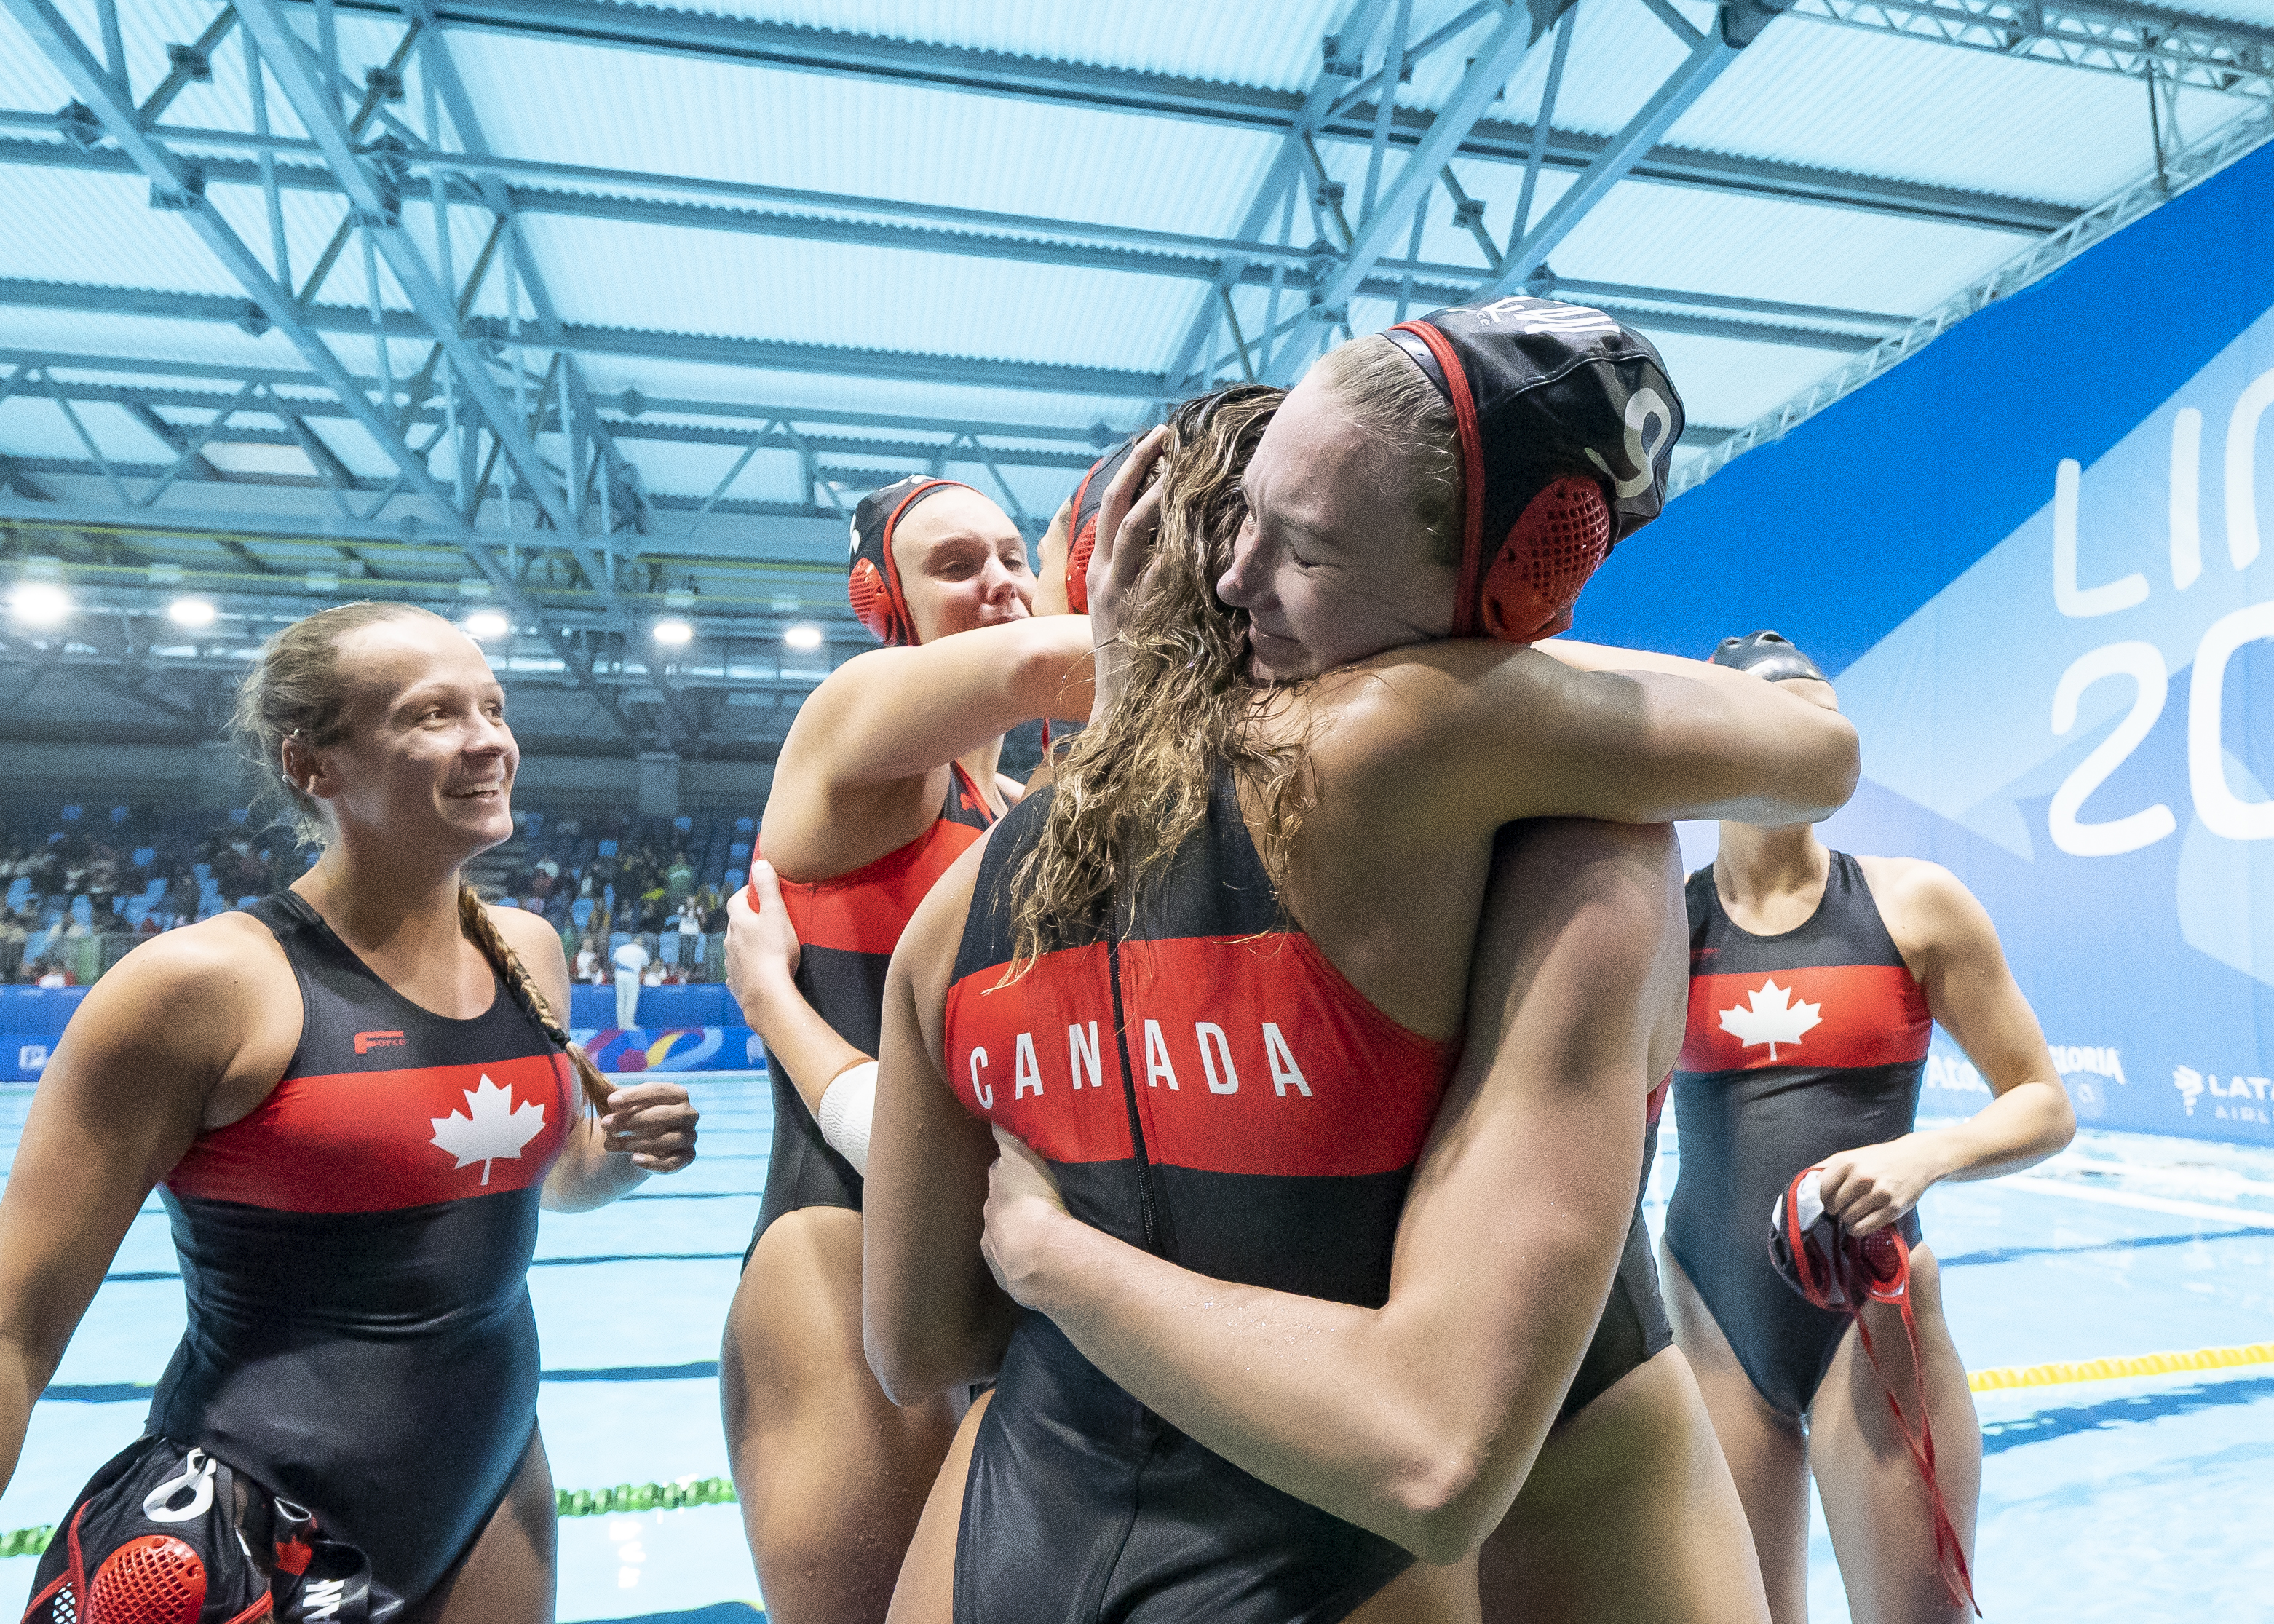 Équipe Canada célèbre sa qualification olympique à Lima 2019